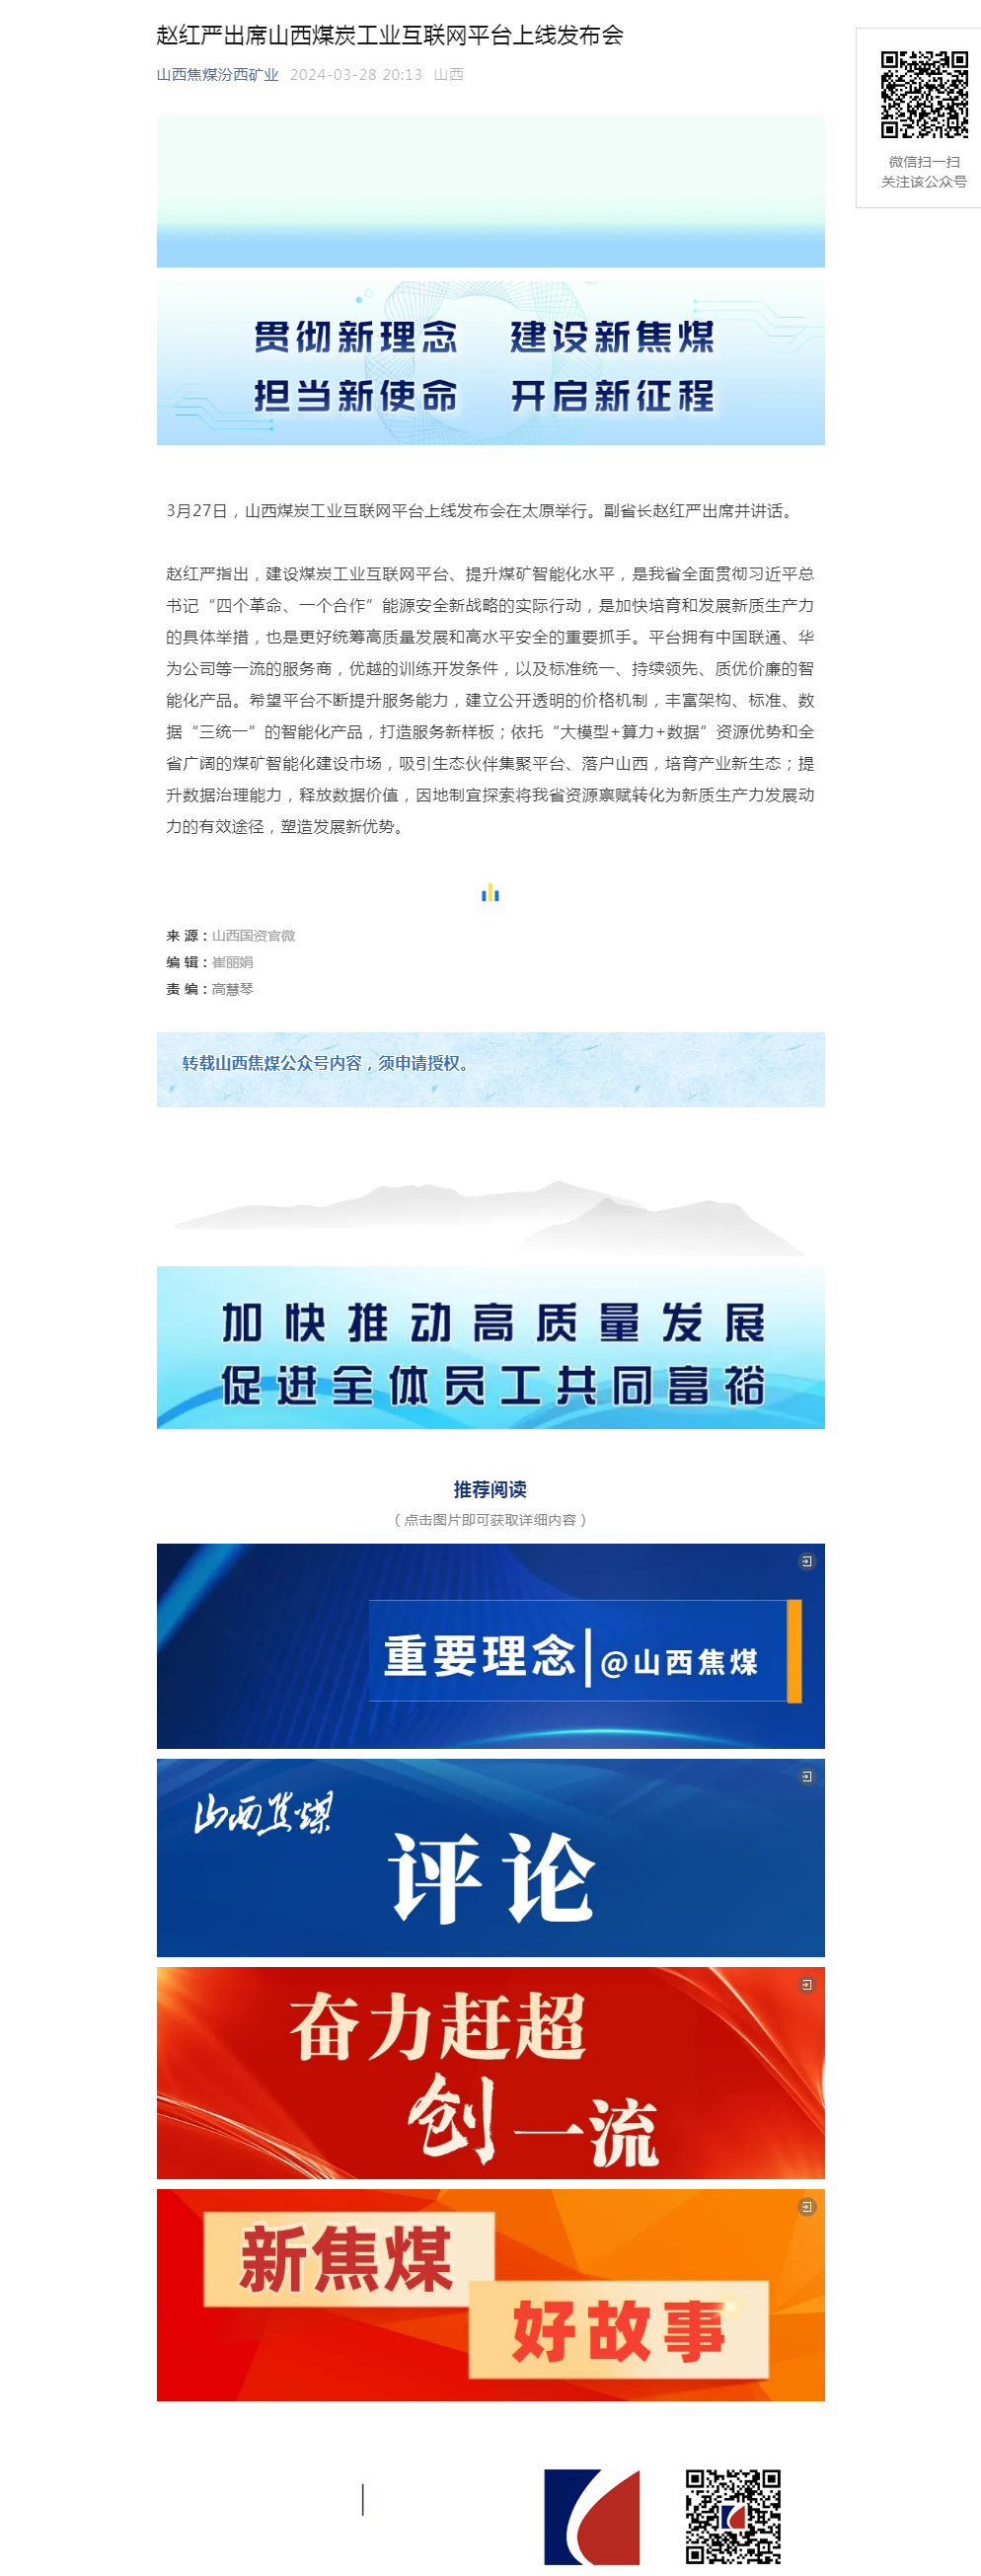 赵红严出席山西煤炭工业互联网平台上线发布会.png